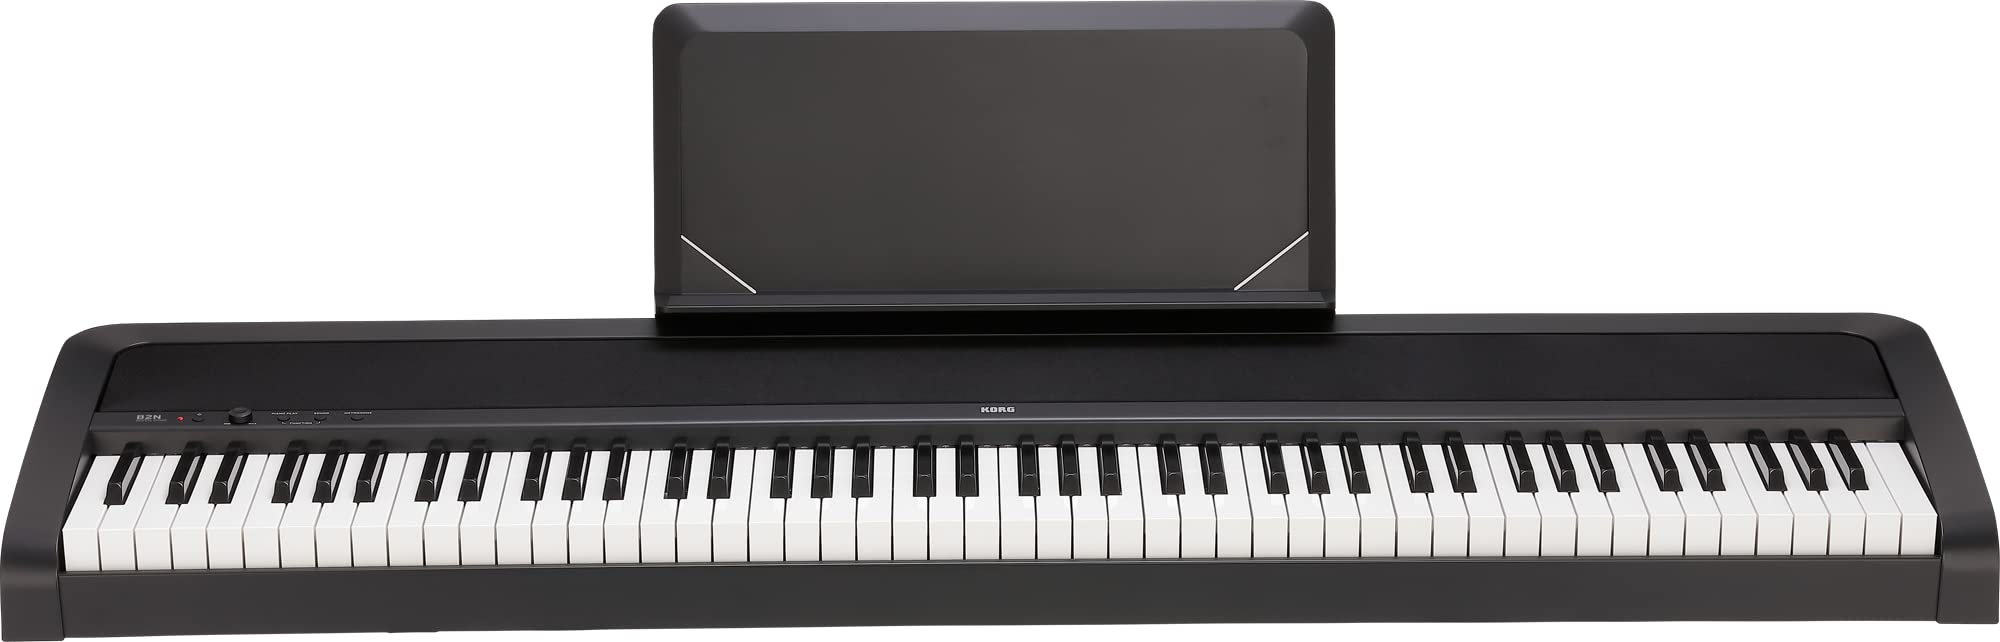 KORG B2N Digitalpiano, Keyboard, E-Piano, (mit leichtgängiger Tastatur, Notenpult, Dämpferpedal und Lernsoftware), USB Midi/Audio-Anschlüsse, schwarz